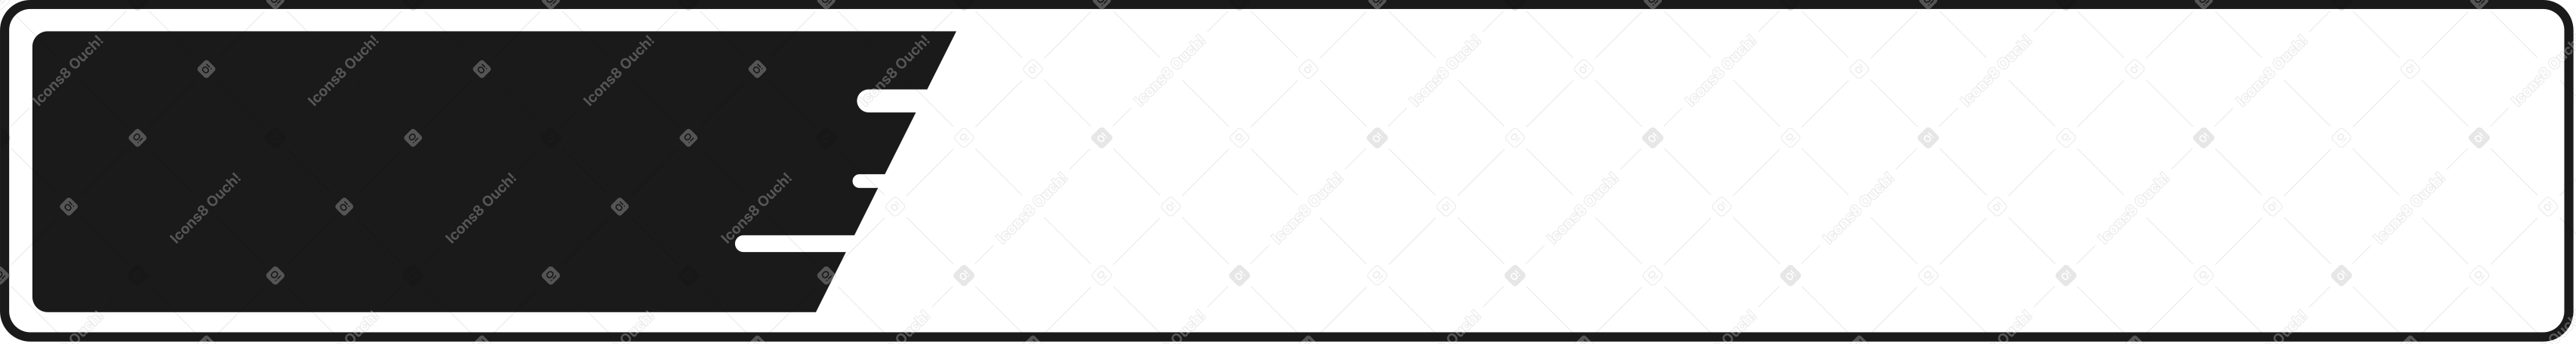 progress loading bar Illustration in PNG, SVG